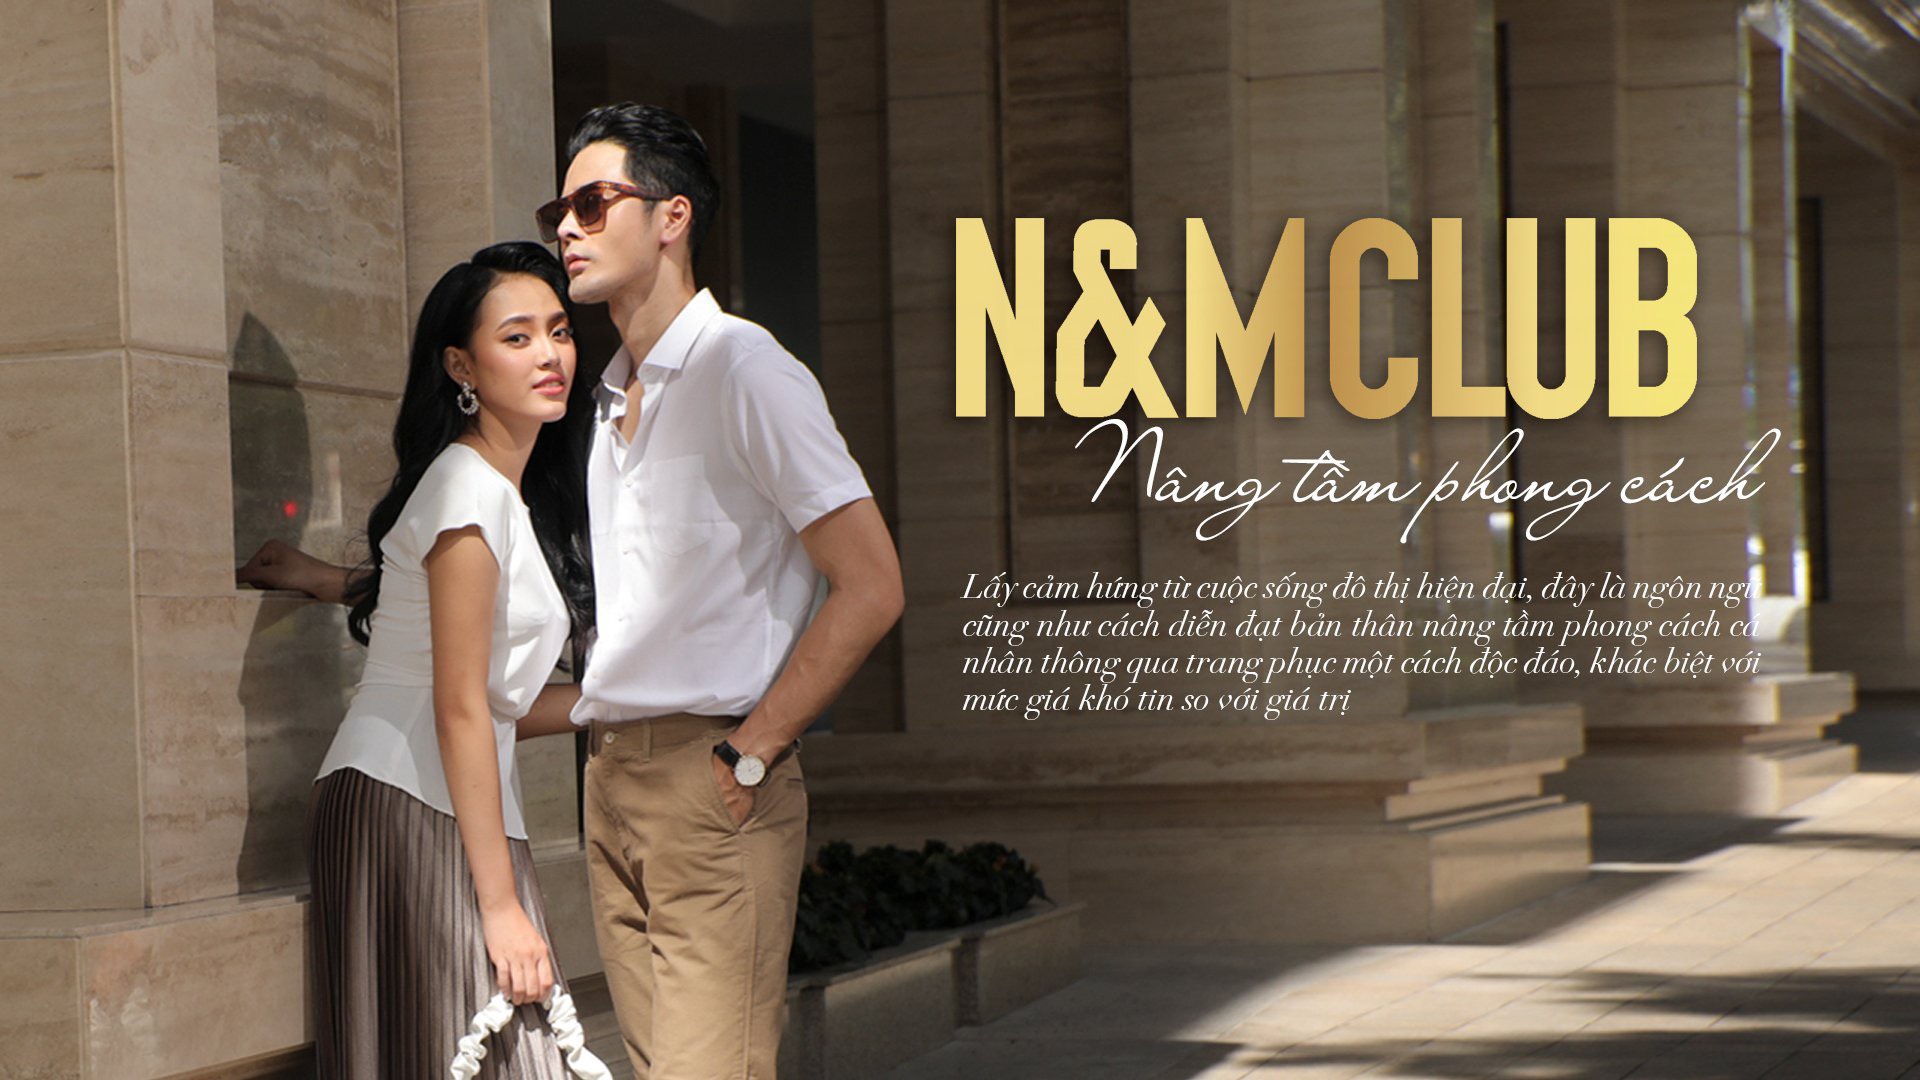 NM Club là thương hiệu “thời trang xanh” (thời trang Eco). Sản phẩm N&M Club được làm từ các chất liệu tự nhiên, thân thiện với môi trường (sợi tre, cà phê, …).